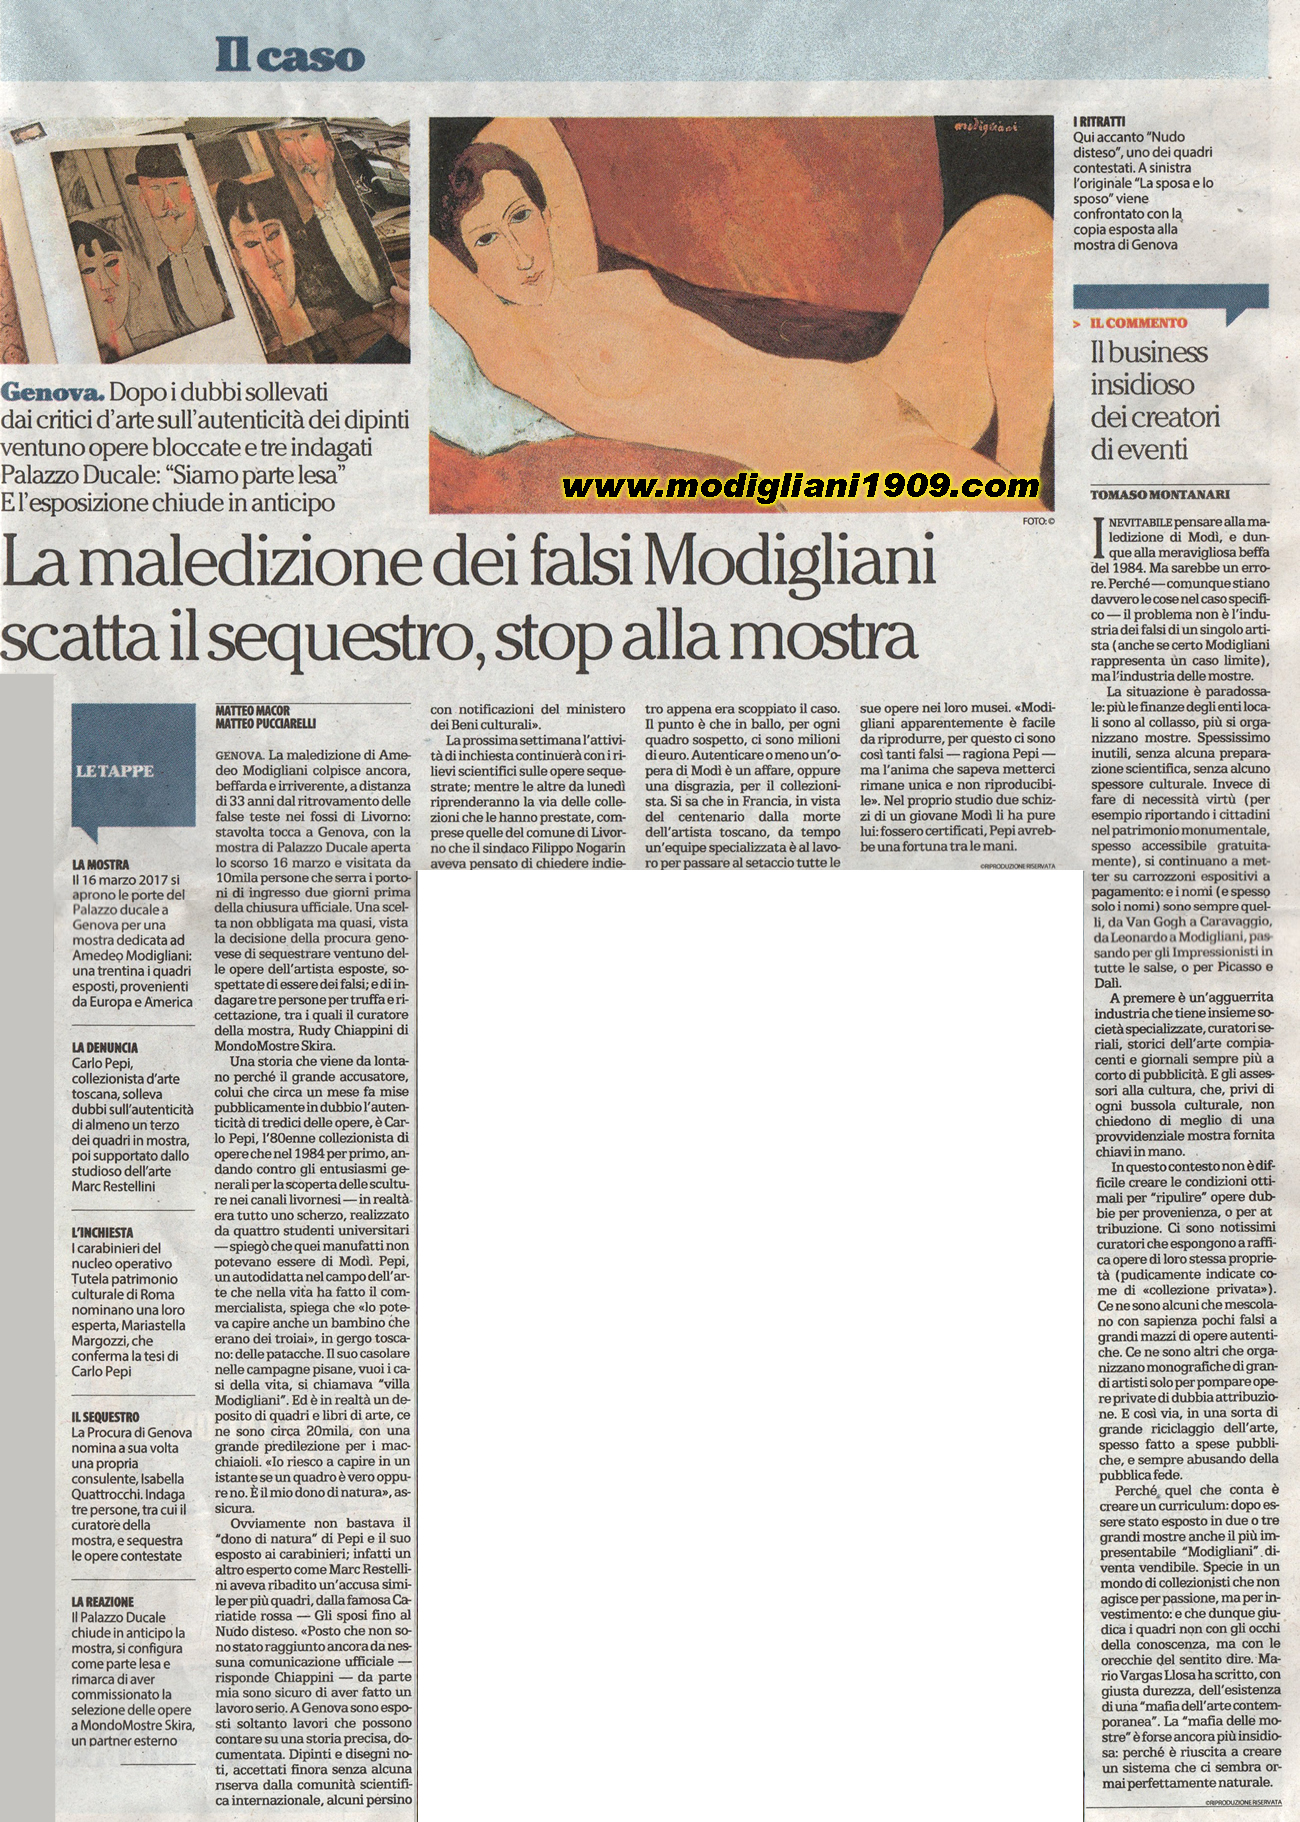 the curse of the fake Modigliani, the seizure starts, the exhibition is closed - La Repubblica